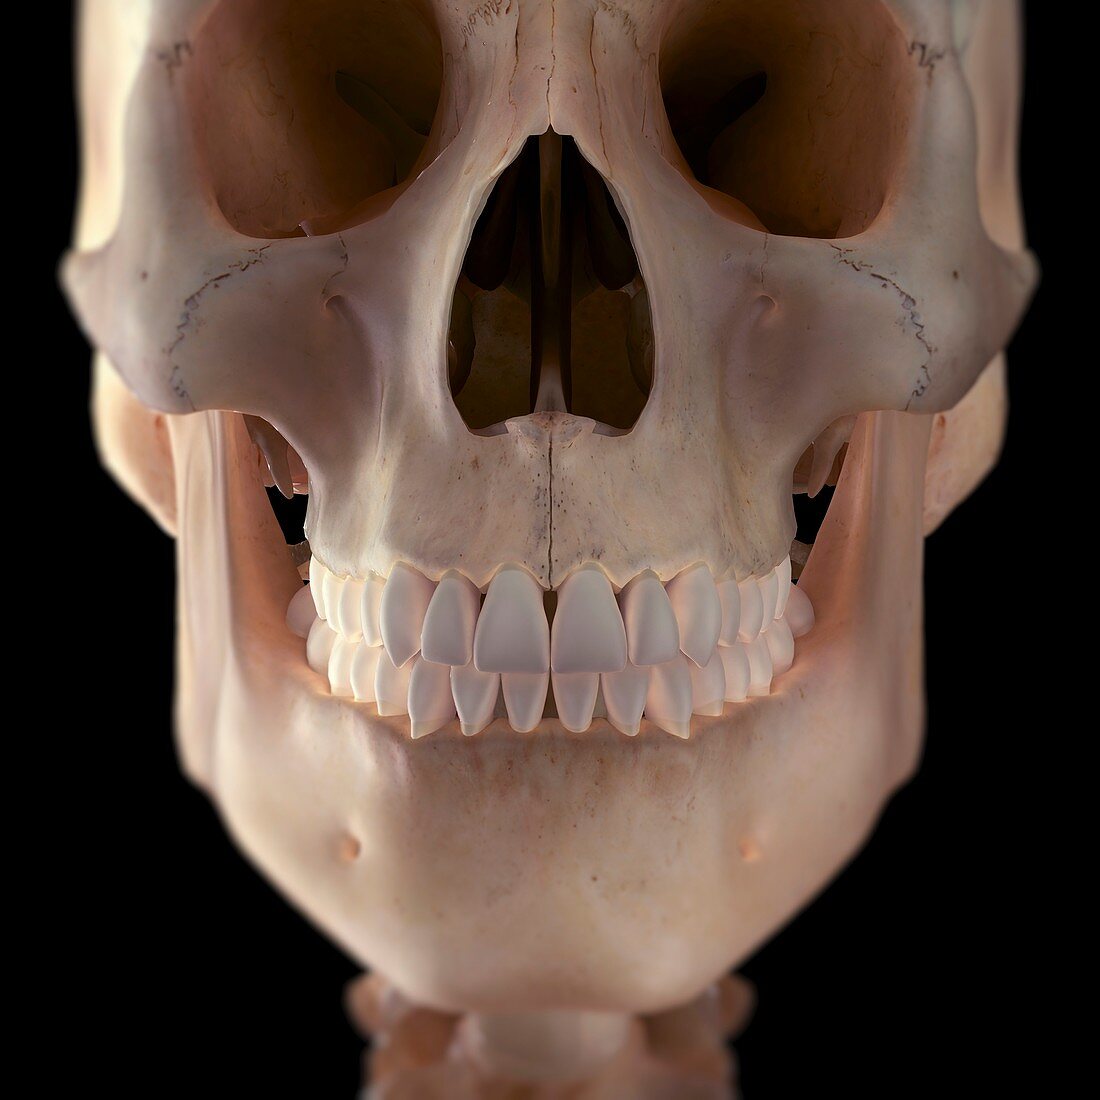 Human Skull, artwork